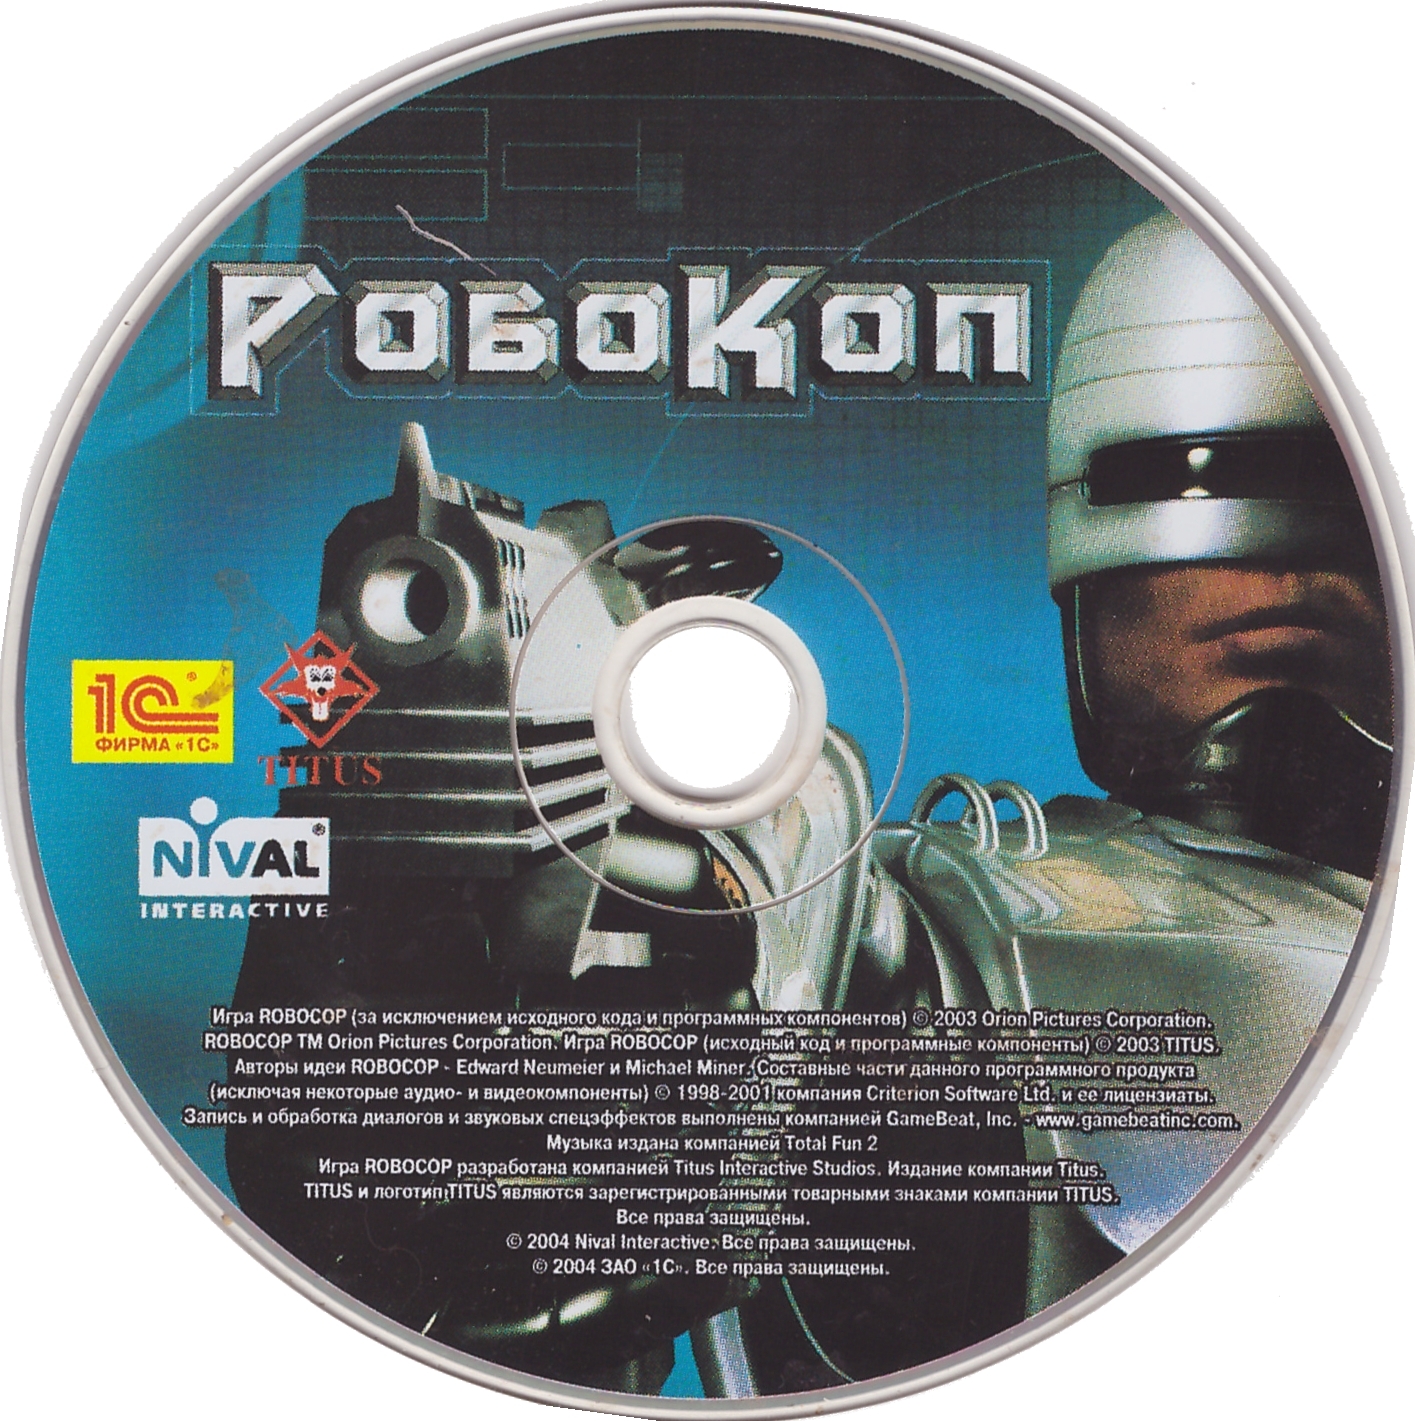 Робокоп пс 5. Робокоп игра 2003. Robocop ps2 Cover. Игра про робокопа 2003. Robocop 2 NES Cover.